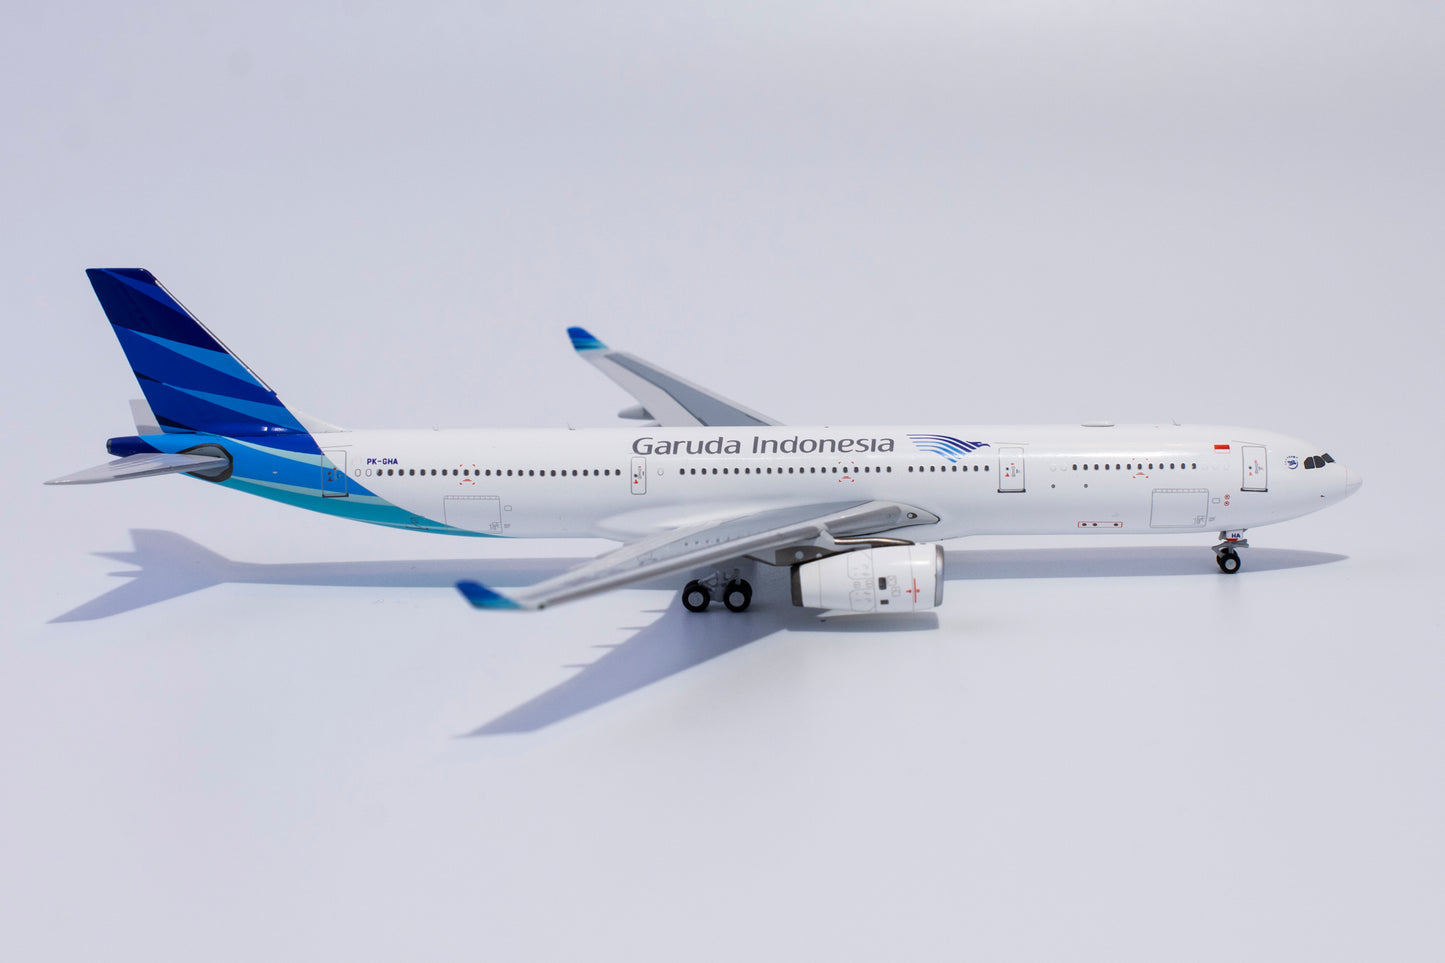 1:400 NG Models Garuda Indonesia Airbus A330-300 PK-GHA NG62018